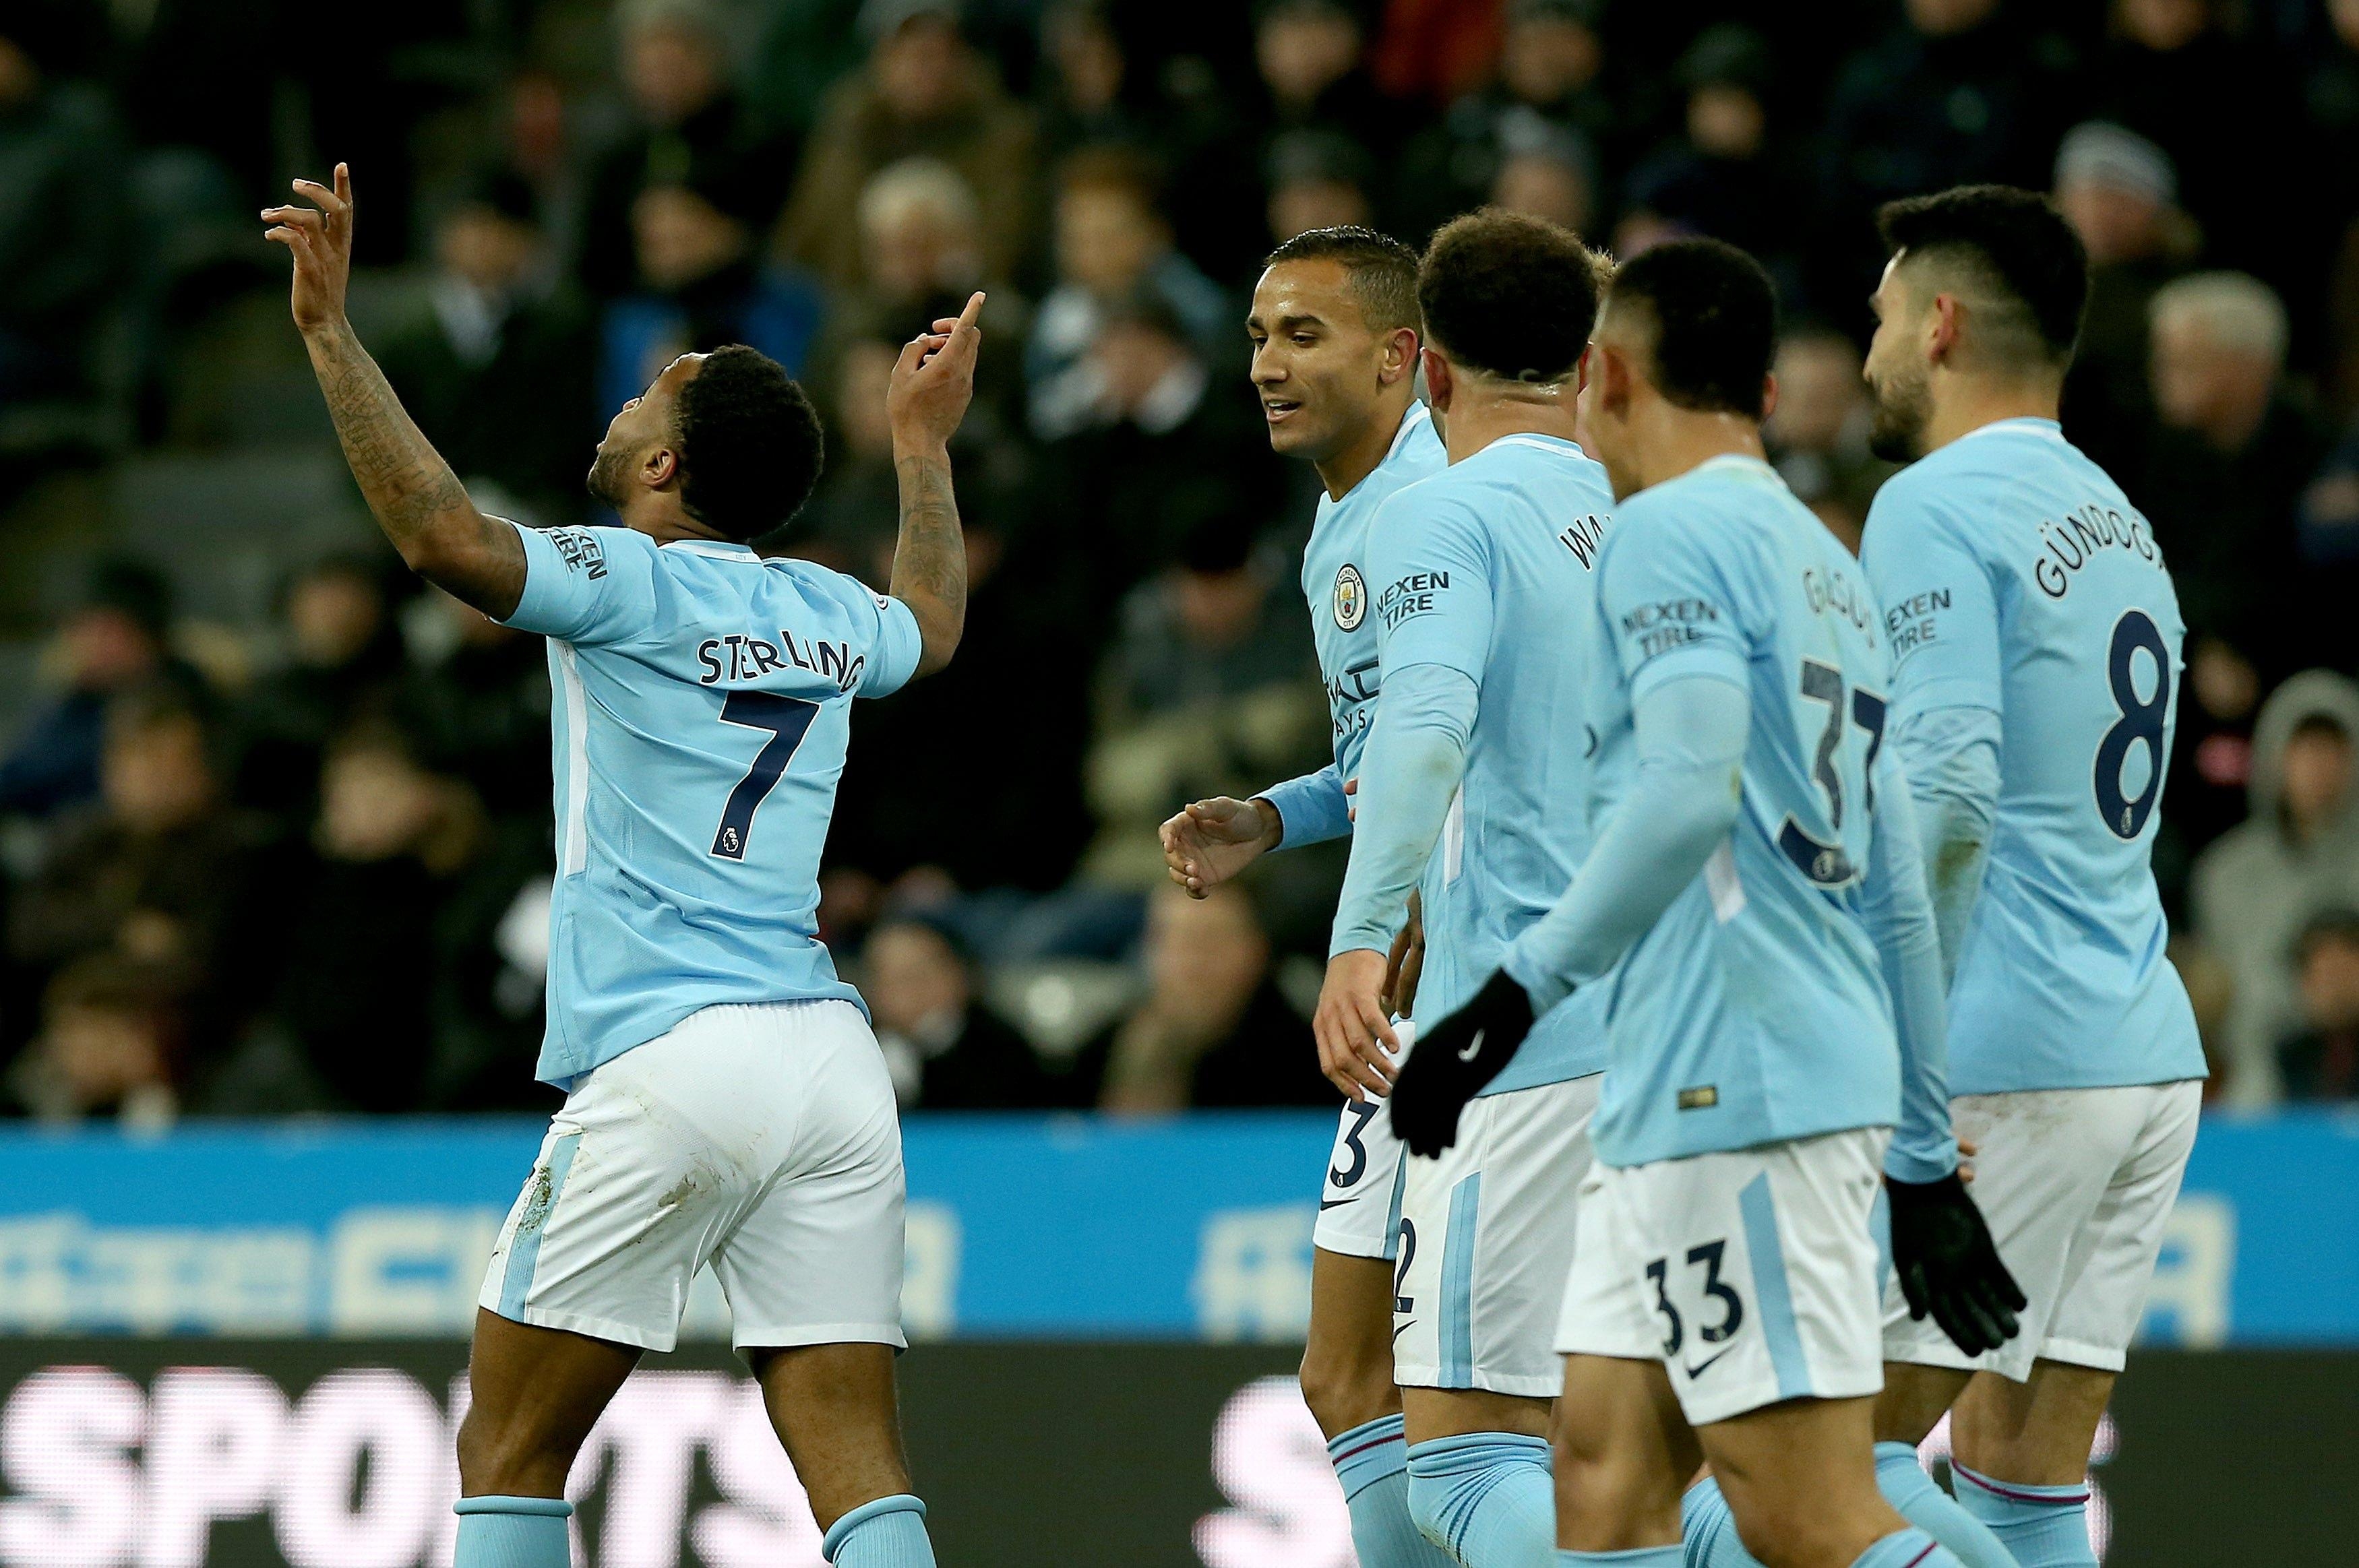 El Tiempo | Fútbol | Manchester City hiló su 18vo triunfo y estiró a 15